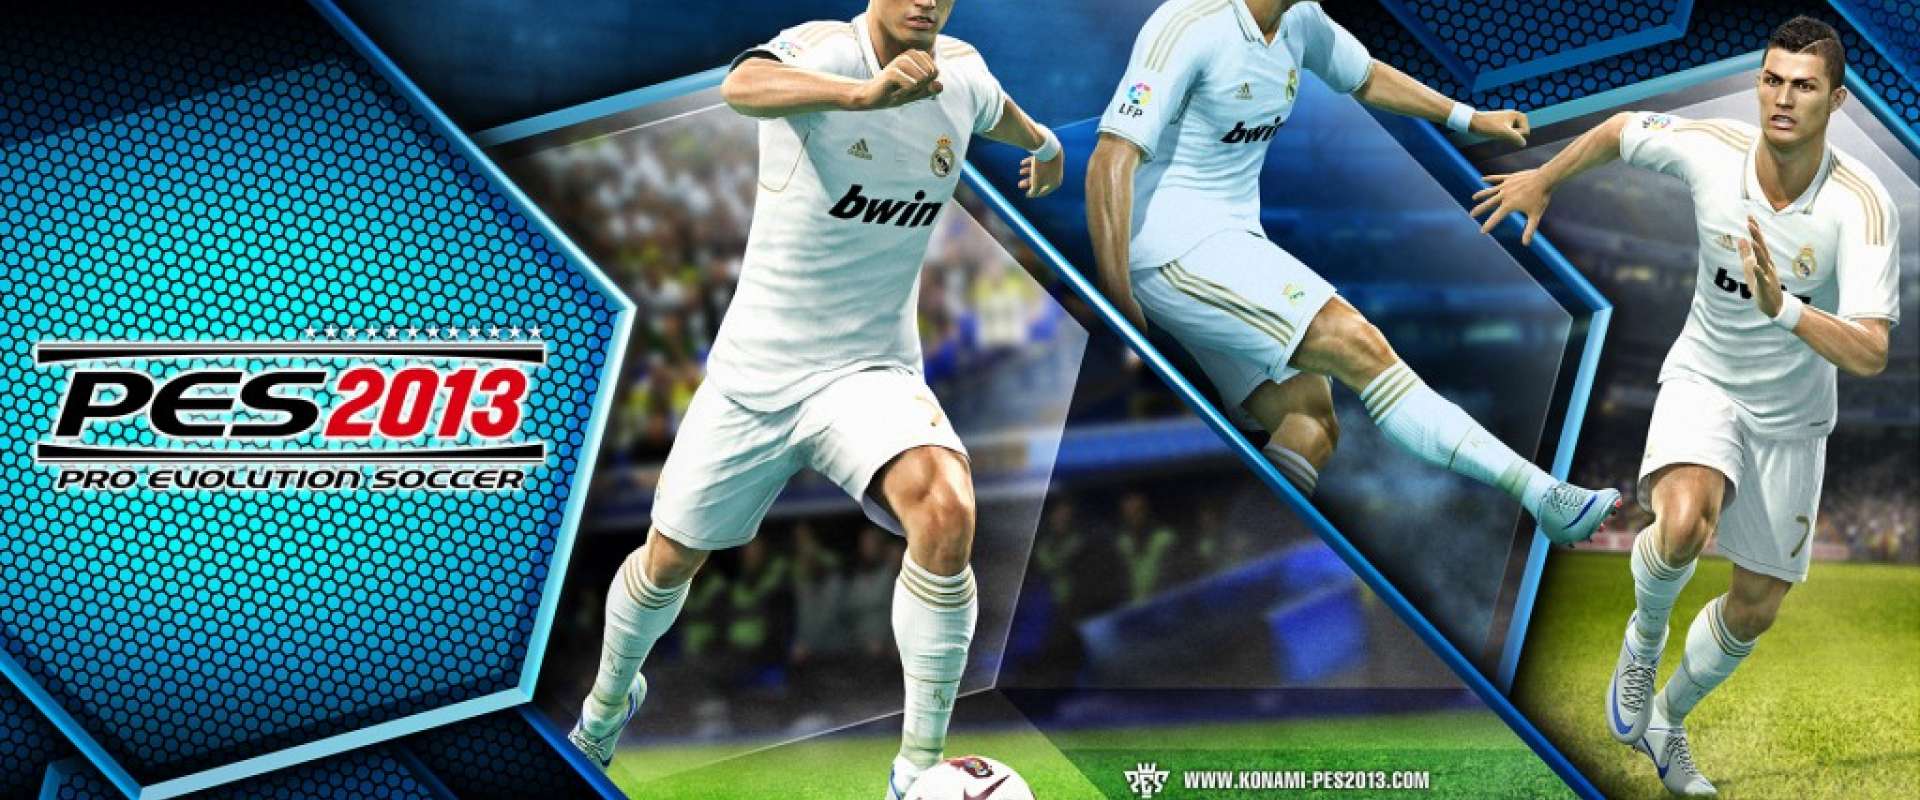 Baixar Narraçao 3.0 Jhonny Borba Completissima - Pro Evolution Soccer 2013  - Tribo Gamer